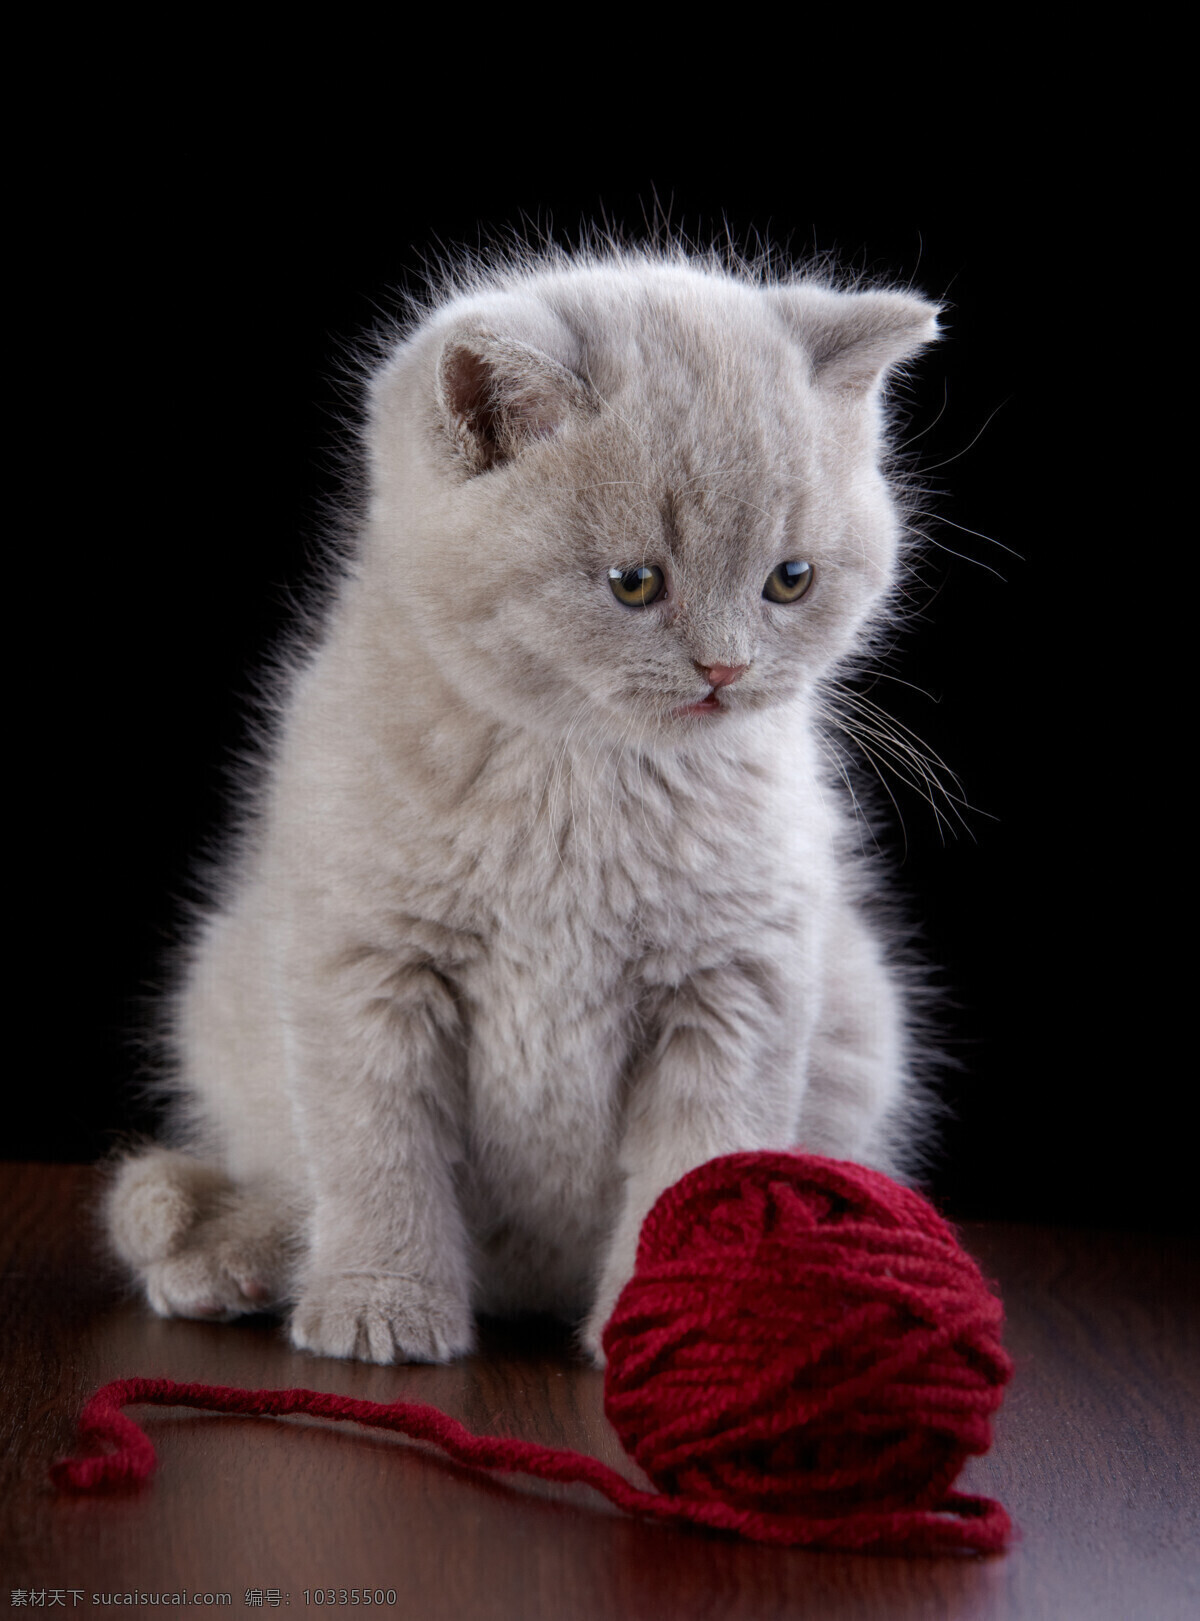 小猫 毛线 团 毛线团 灰色猫咪 宠物 可爱动物 萌宠 动物摄影 猫咪图片 生物世界